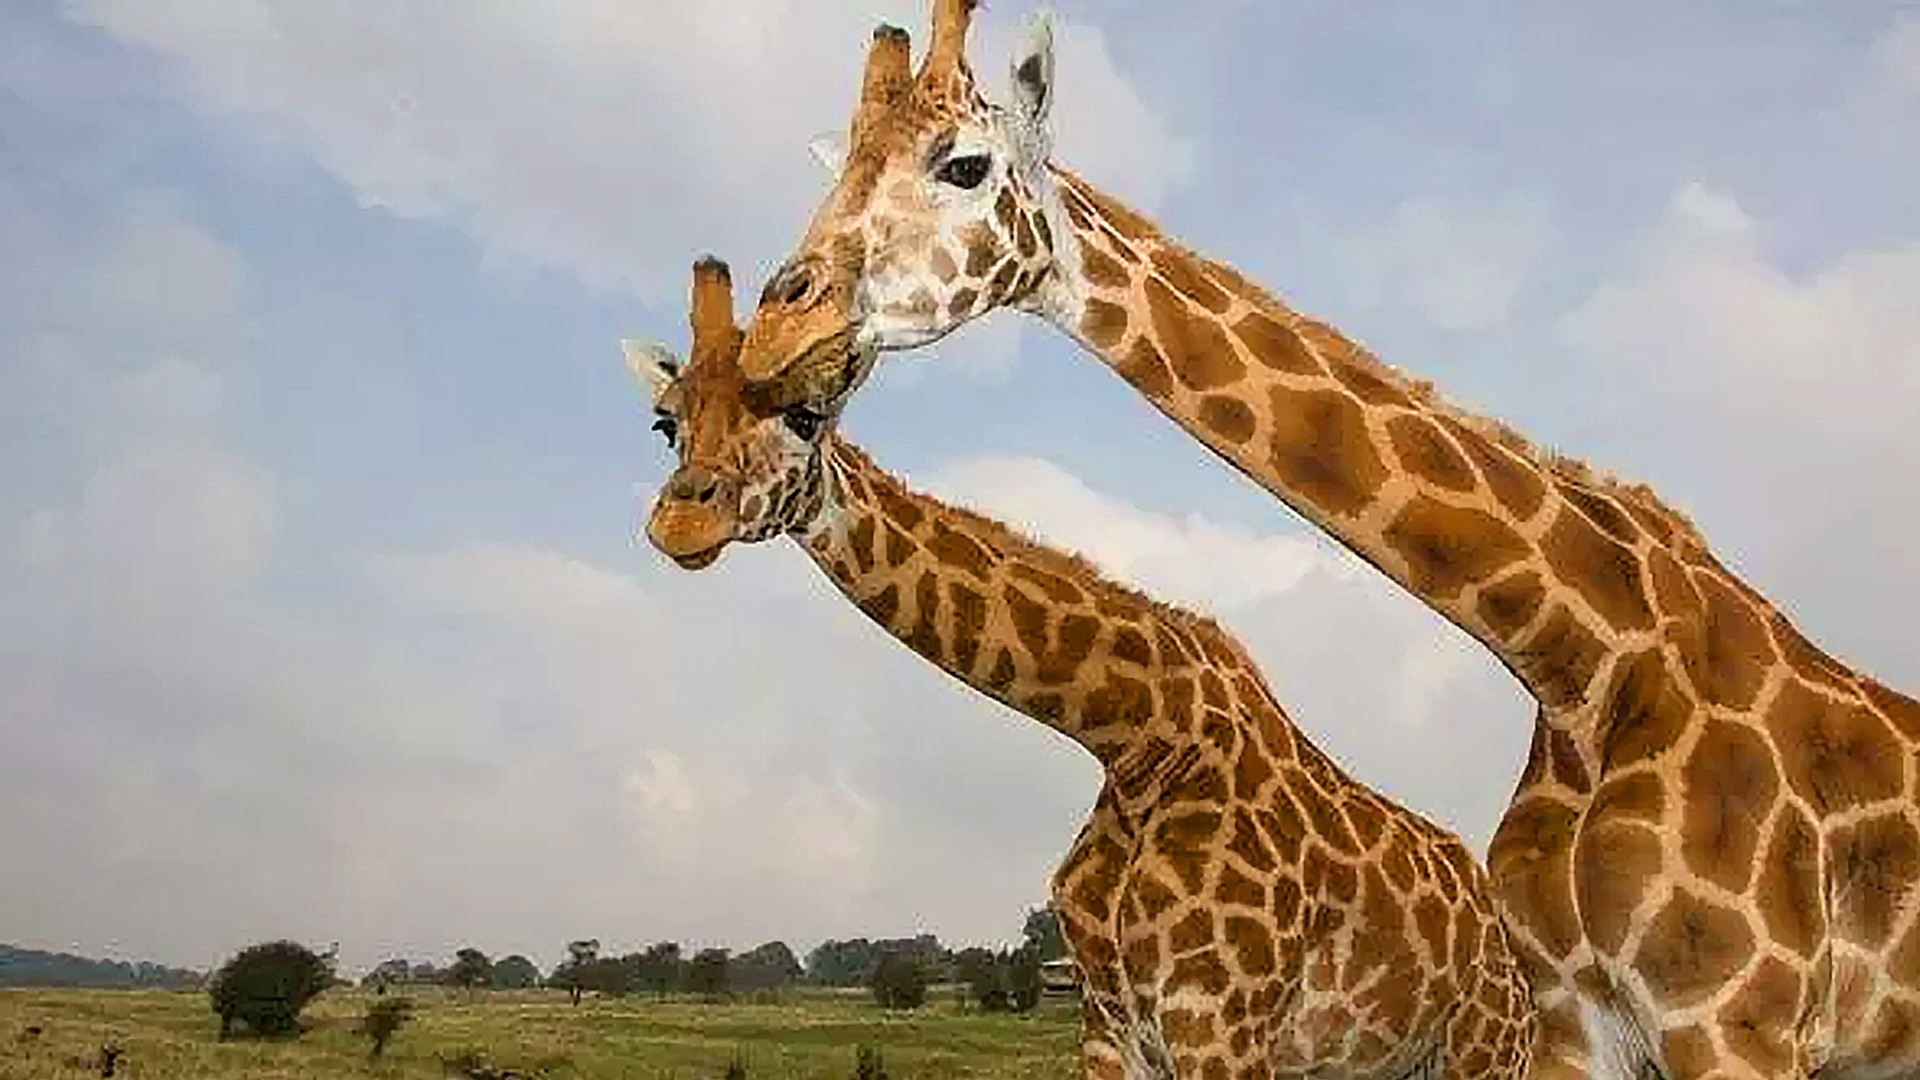 Giraffes roaming